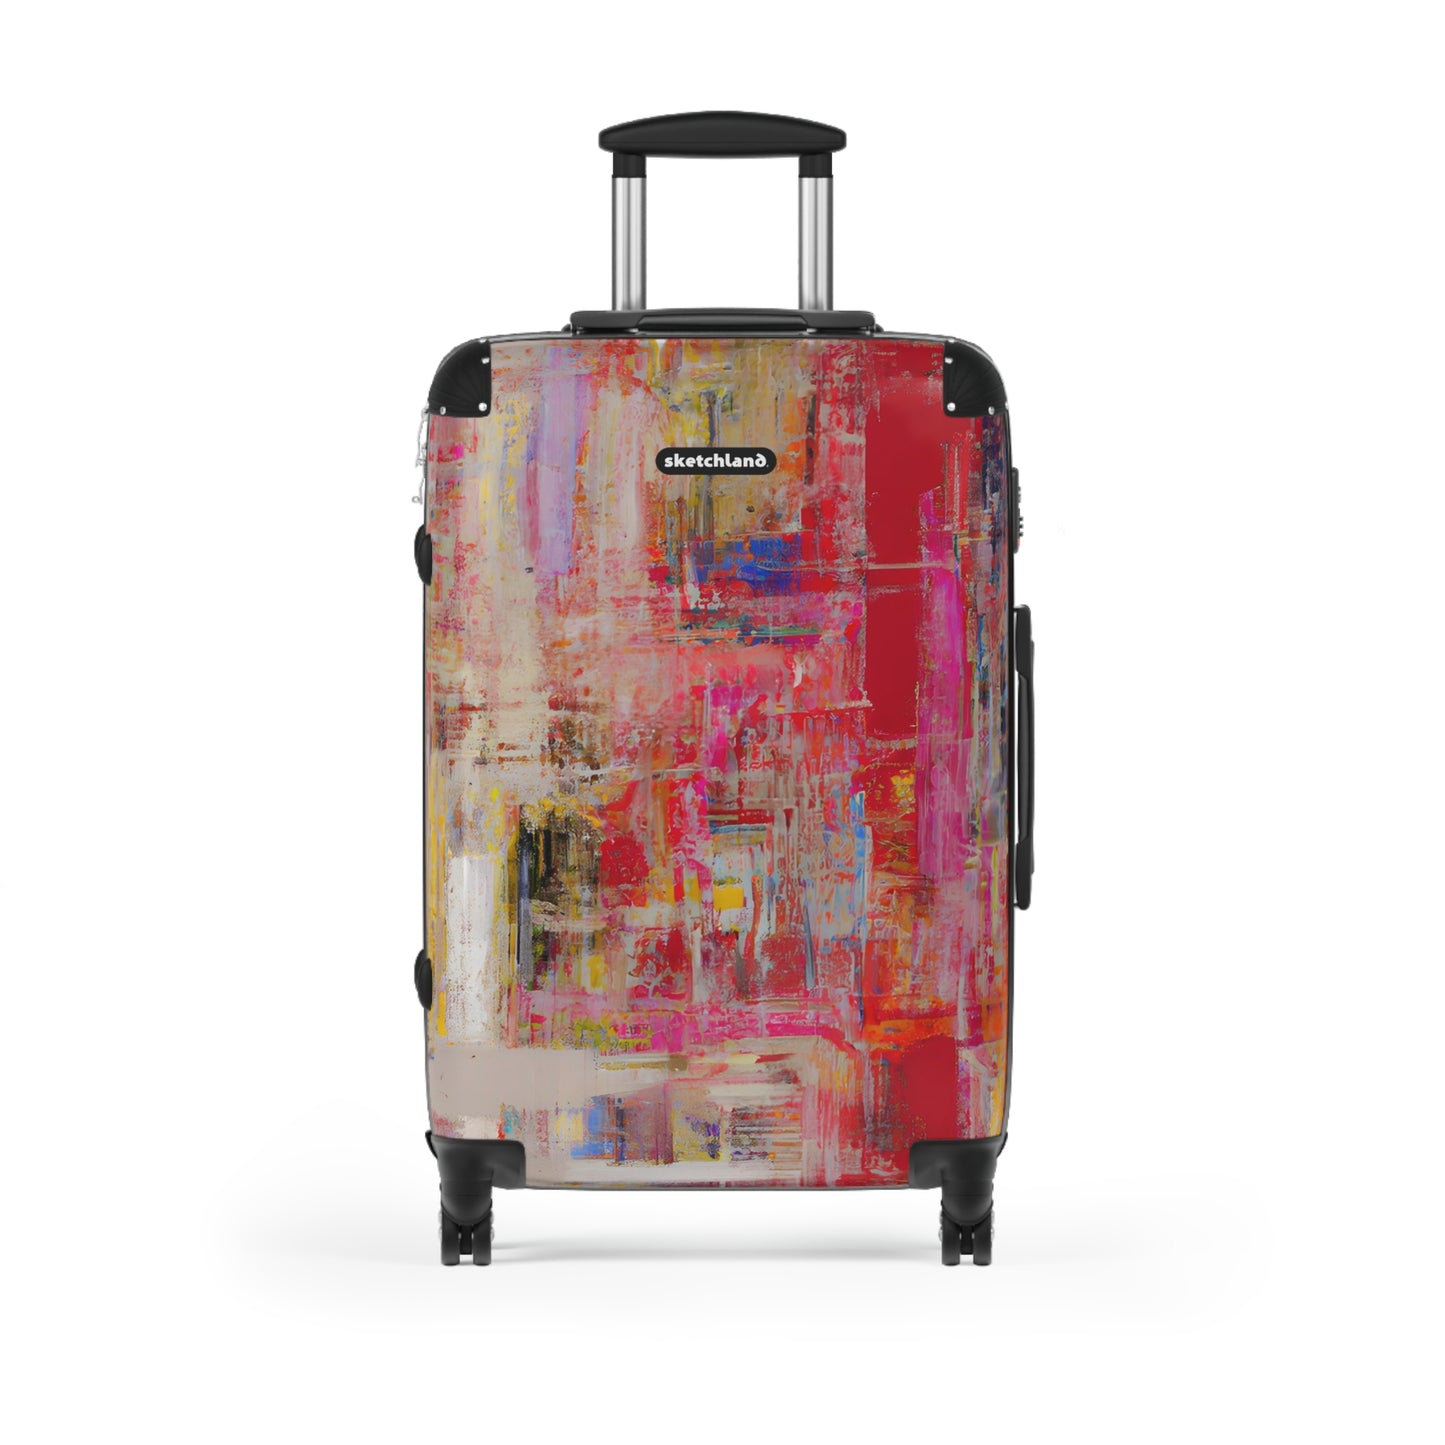 Gestura Wyndon - Rêve Roamer Suitcases